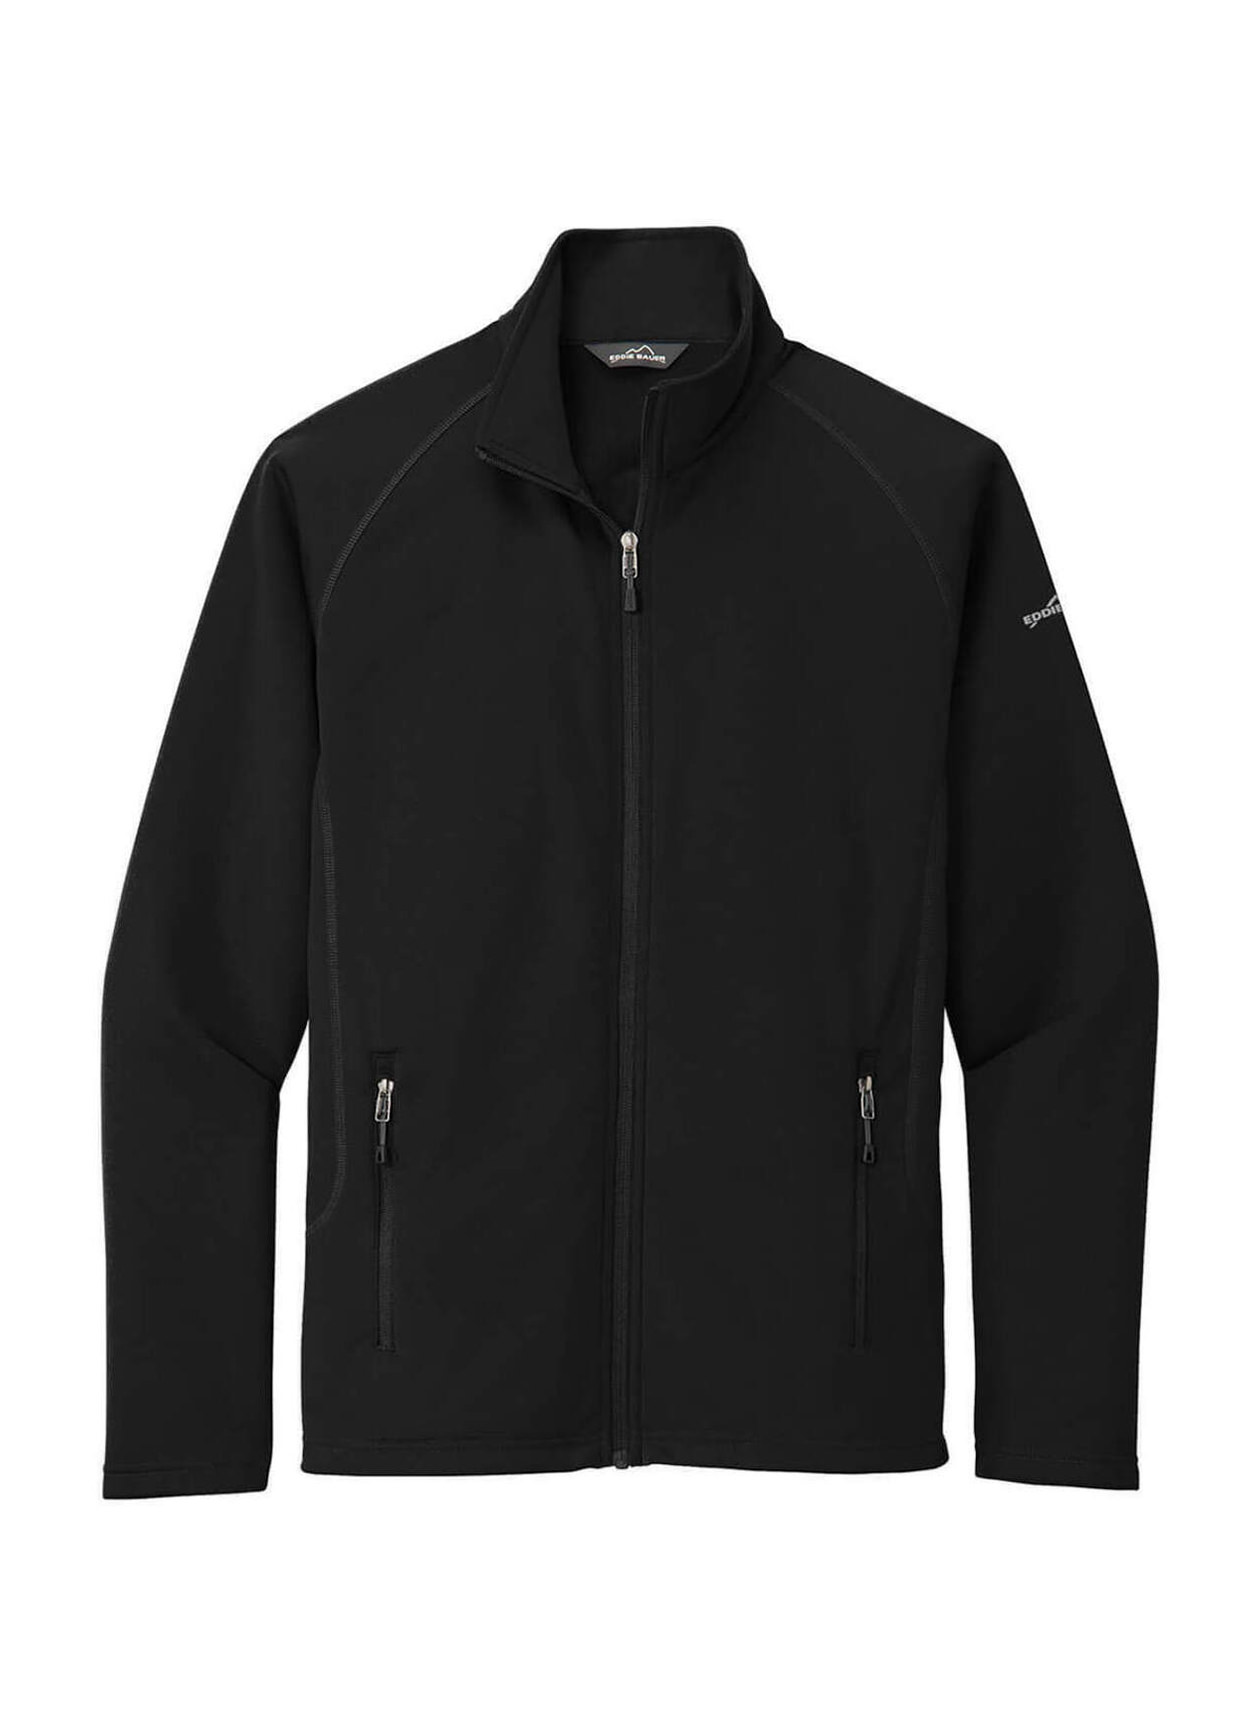 Corporate Eddie Bauer Men's Black Micro Fleece Jacket